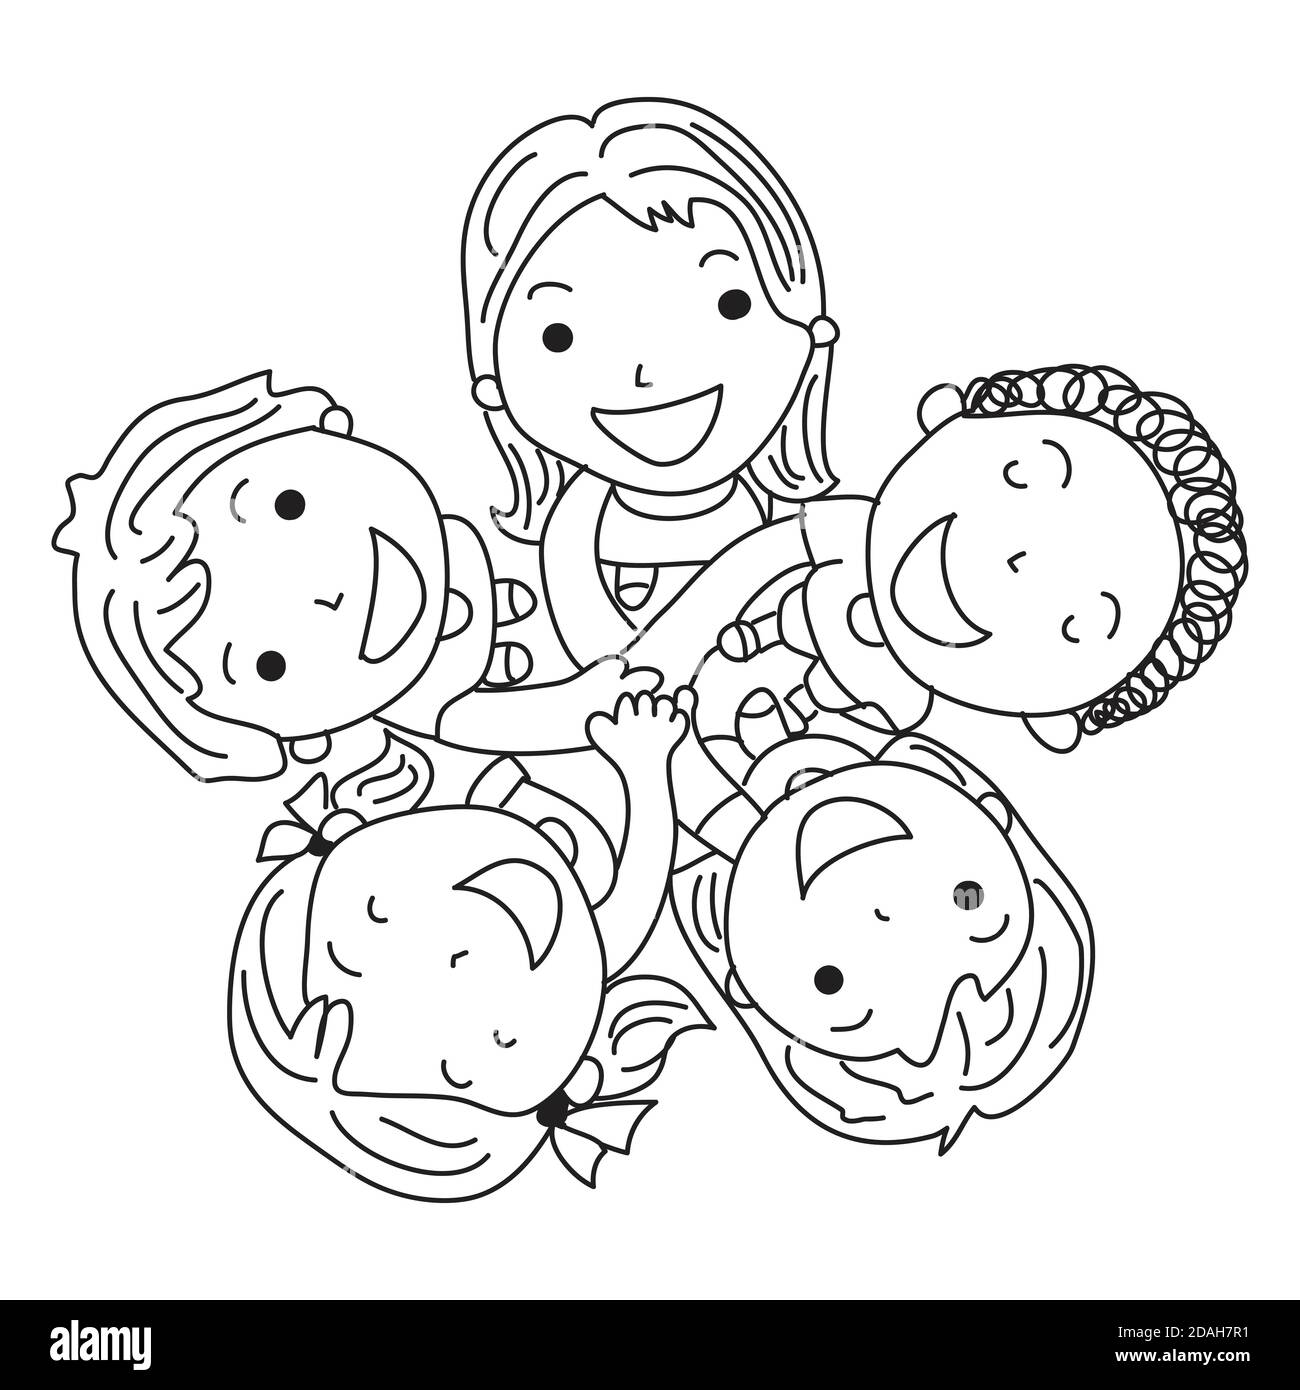 Disegnata a mano da cinque bambini che tengono le mani. Concetto di giorno per bambini Illustrazione Vettoriale